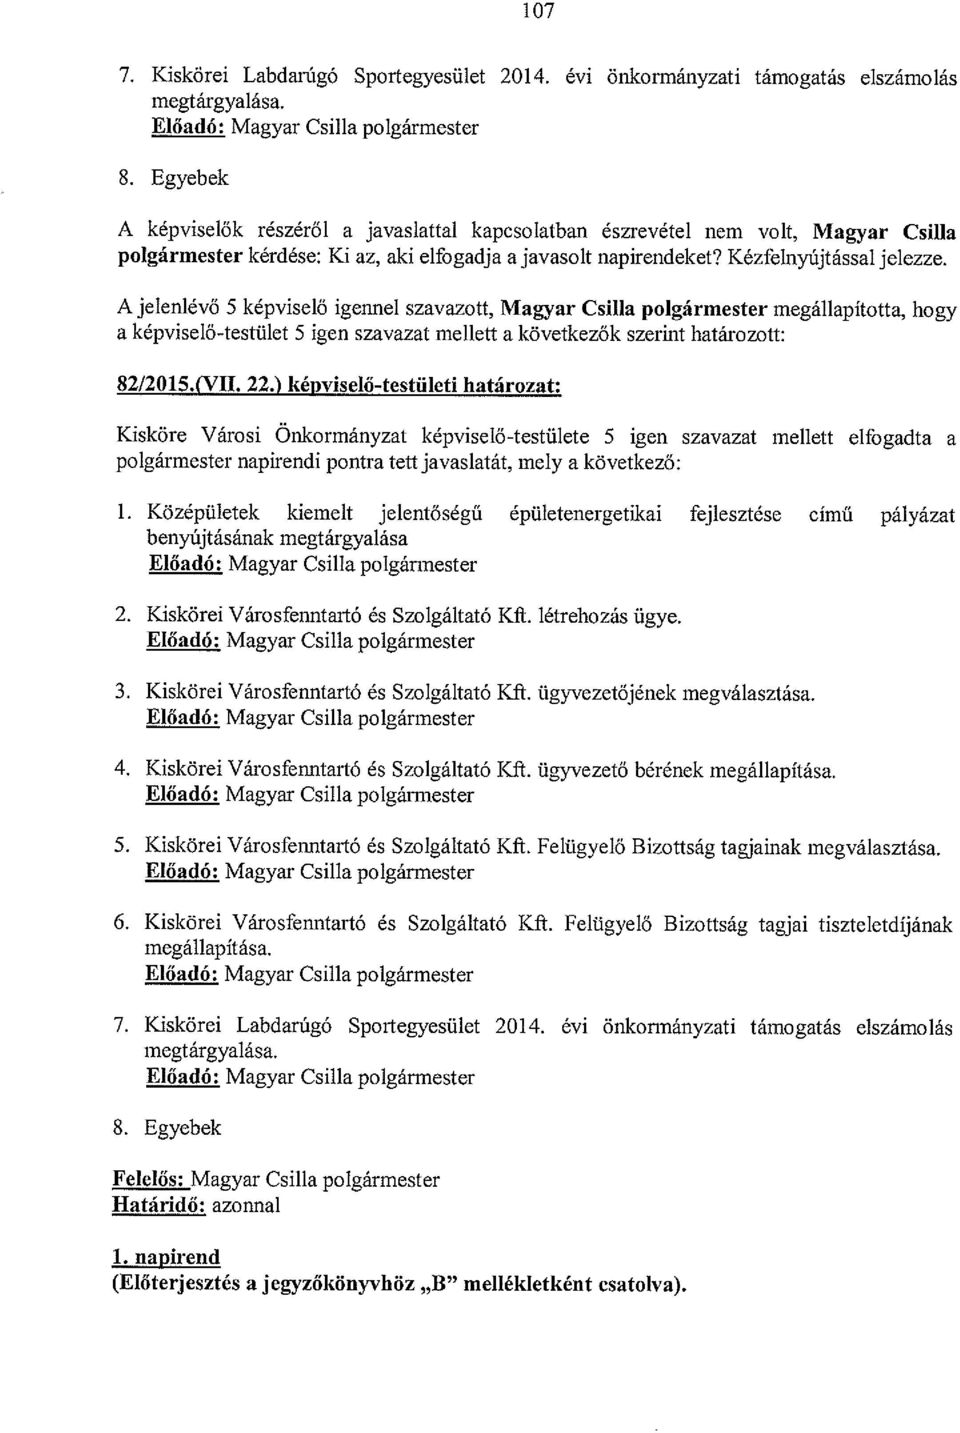 A jelenlévő S képviselő igennel szavazott, Magyar Csilla polgármester megállapította, hogy a képviselő-testület 5 igen szavazat mellett a következők szerint határozott: 82/2015.(VII. 22.